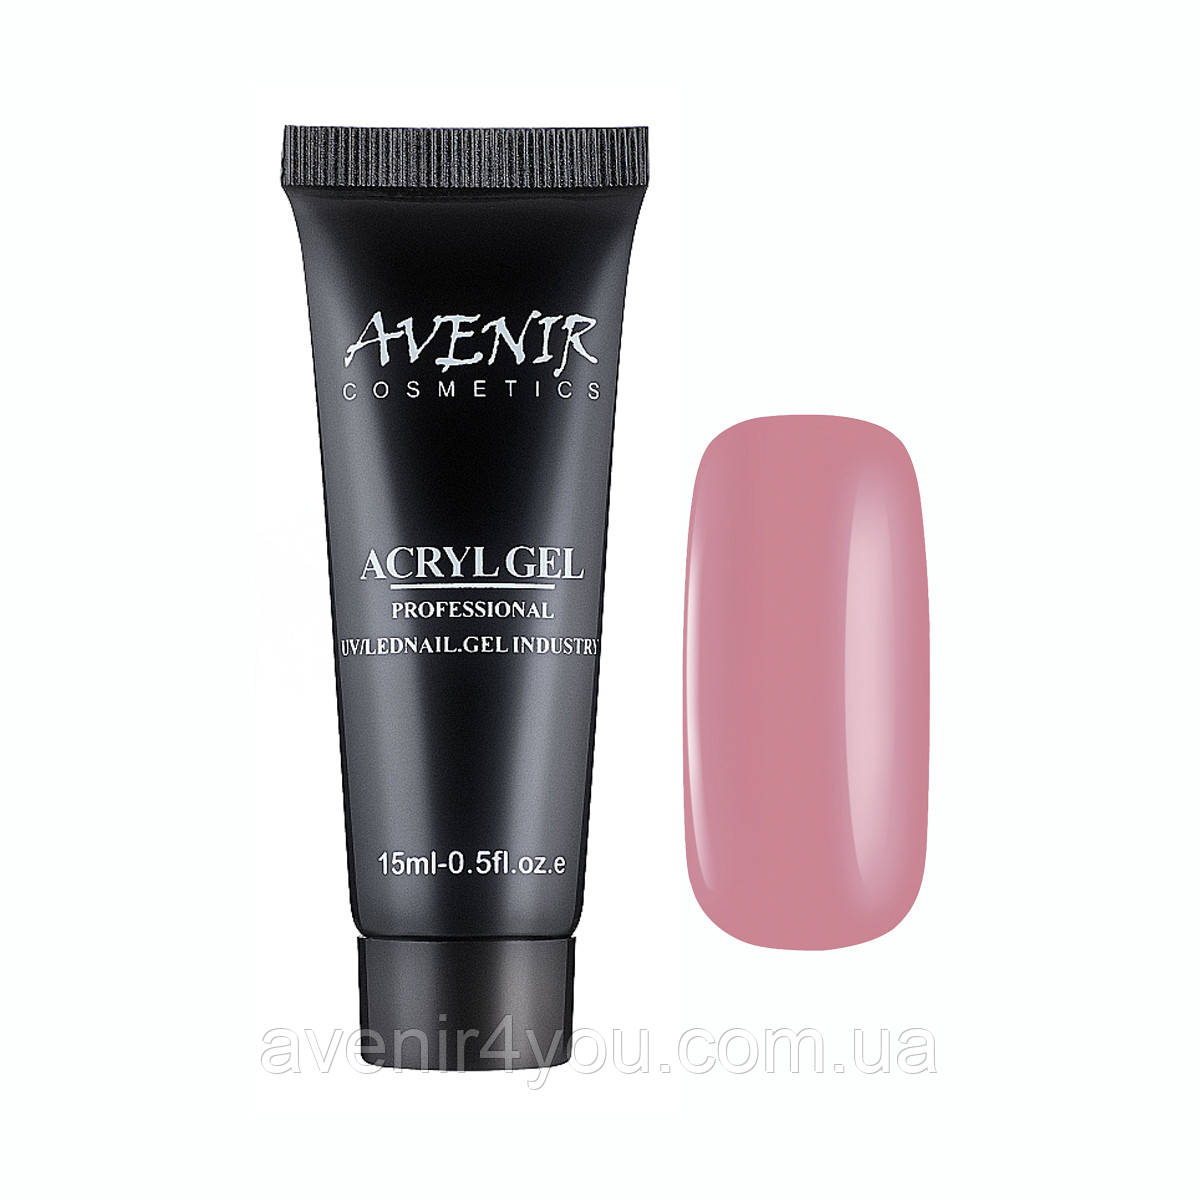 Акрил-гель Avenir Cosmetics №001 Nude Pink 15 мл